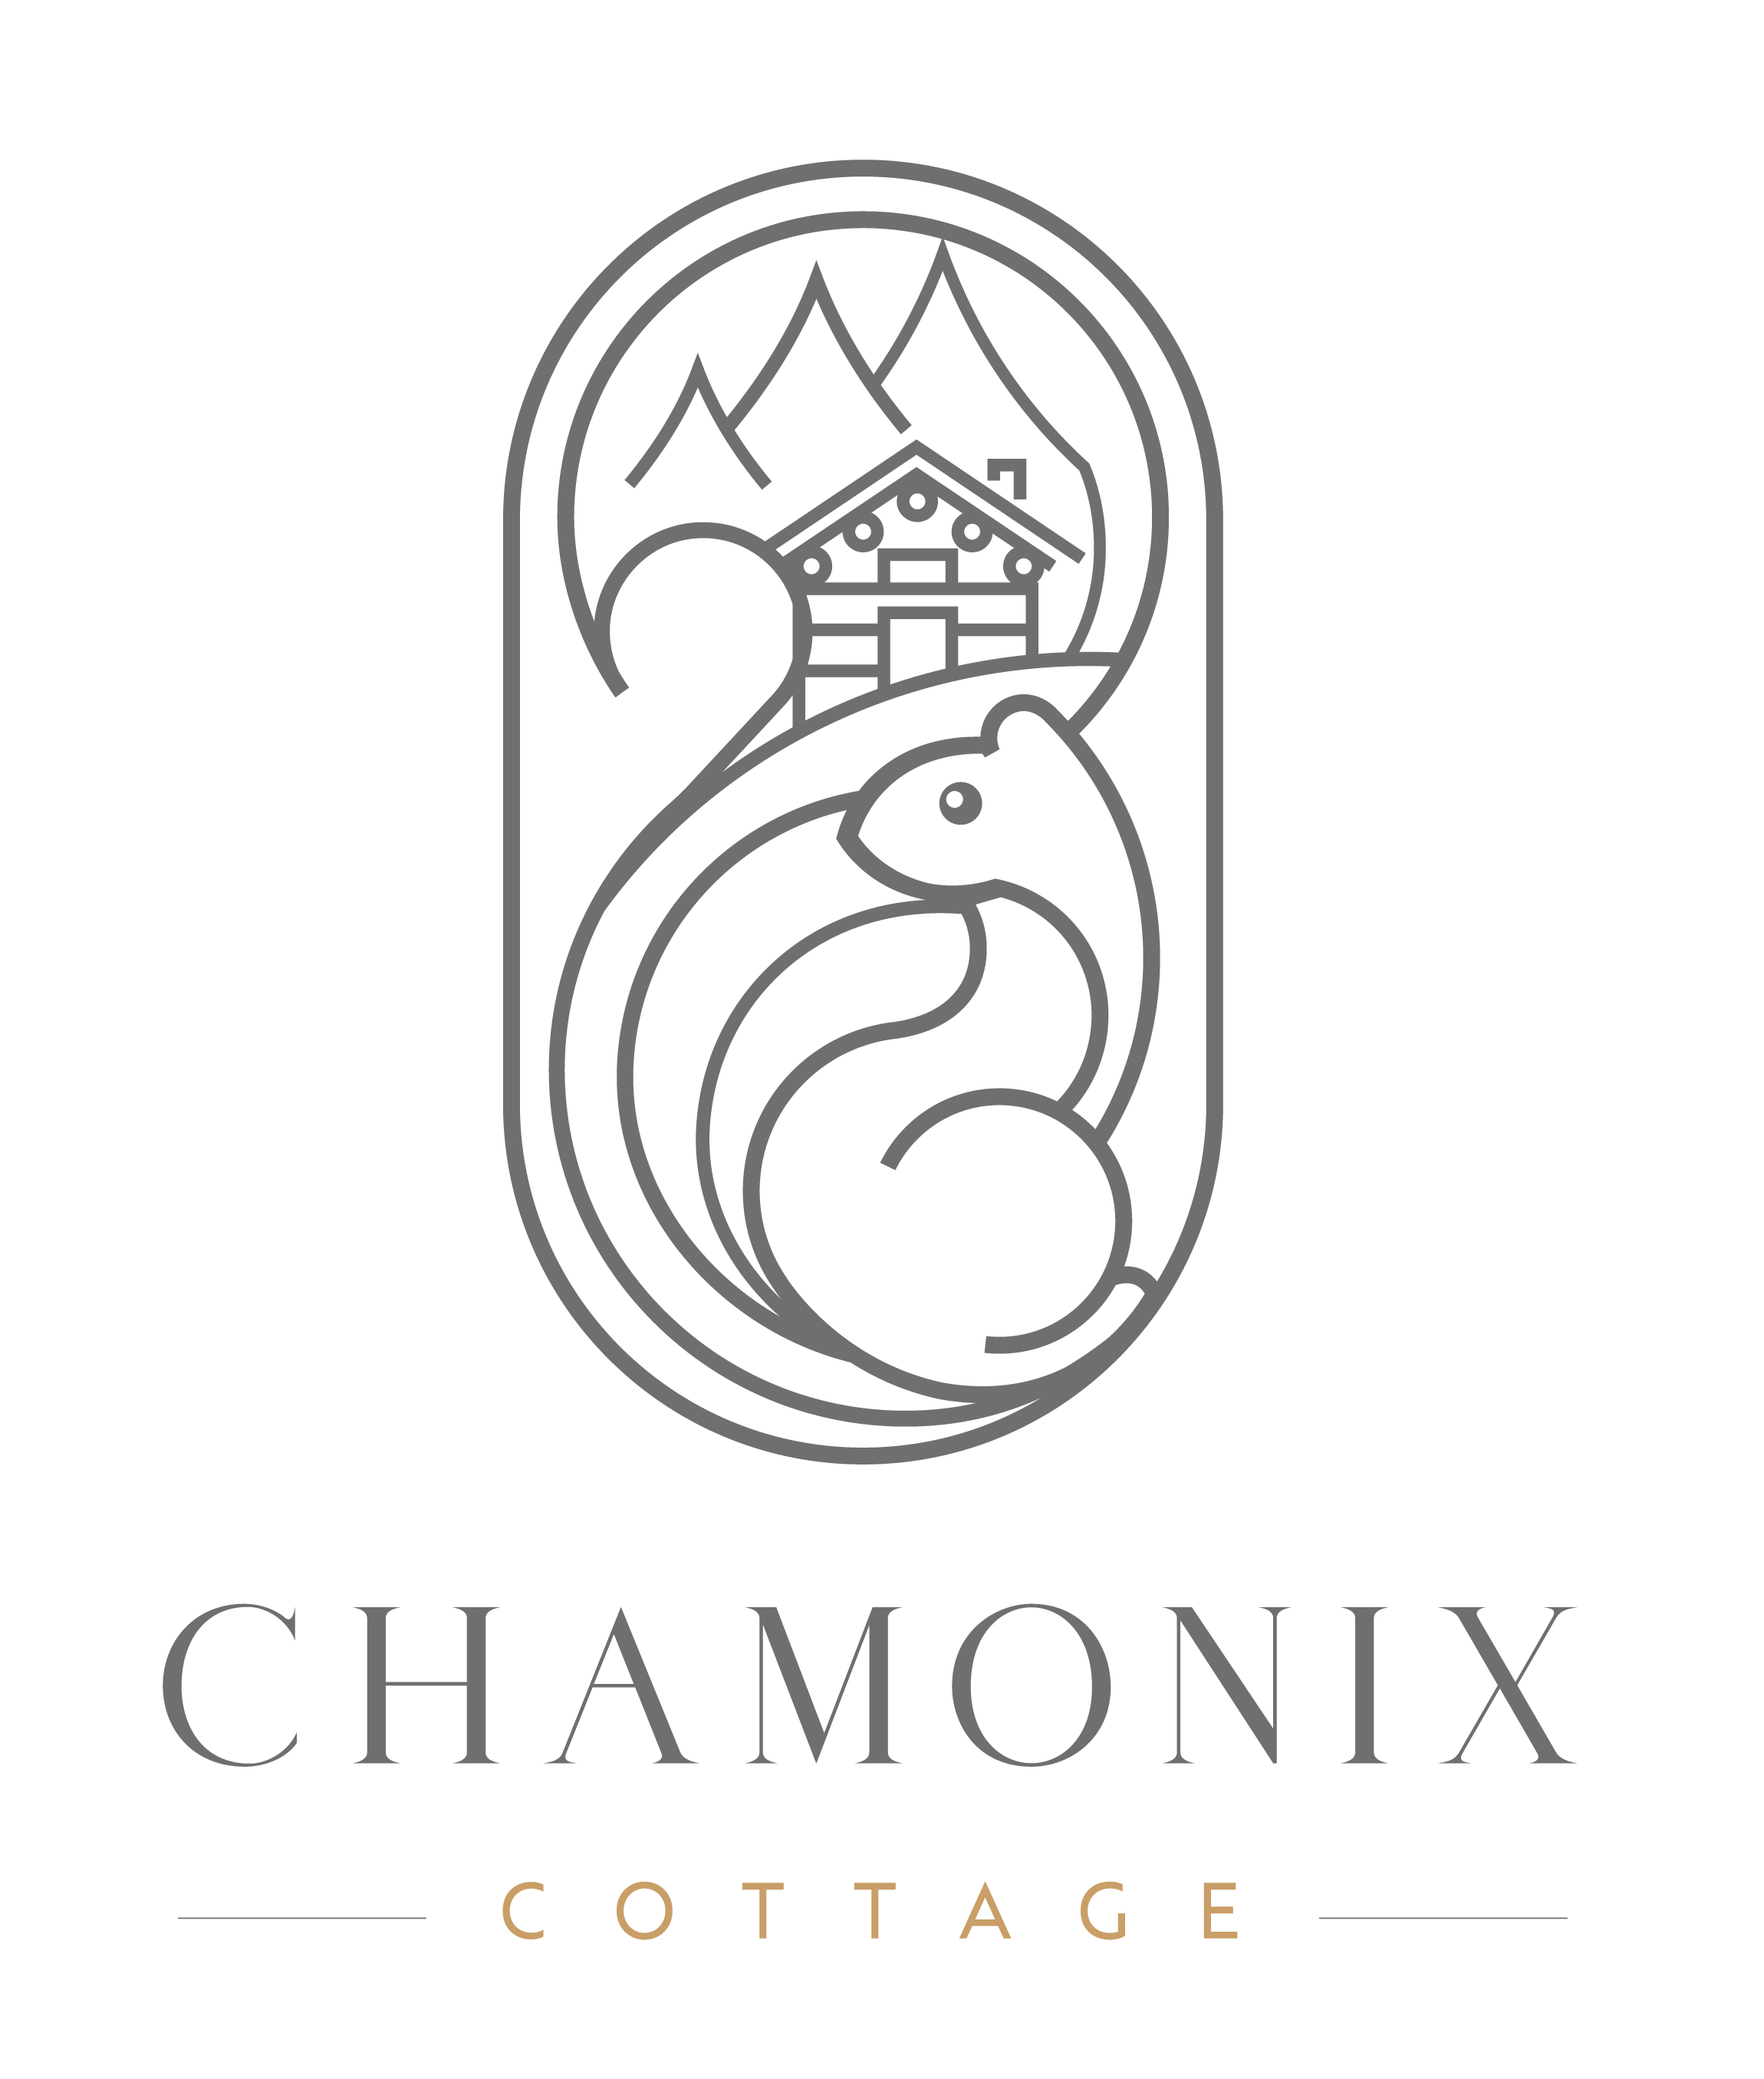 Chamonix Cottage | Description - Chamonix Cottage - Discover Chamonix Cottage